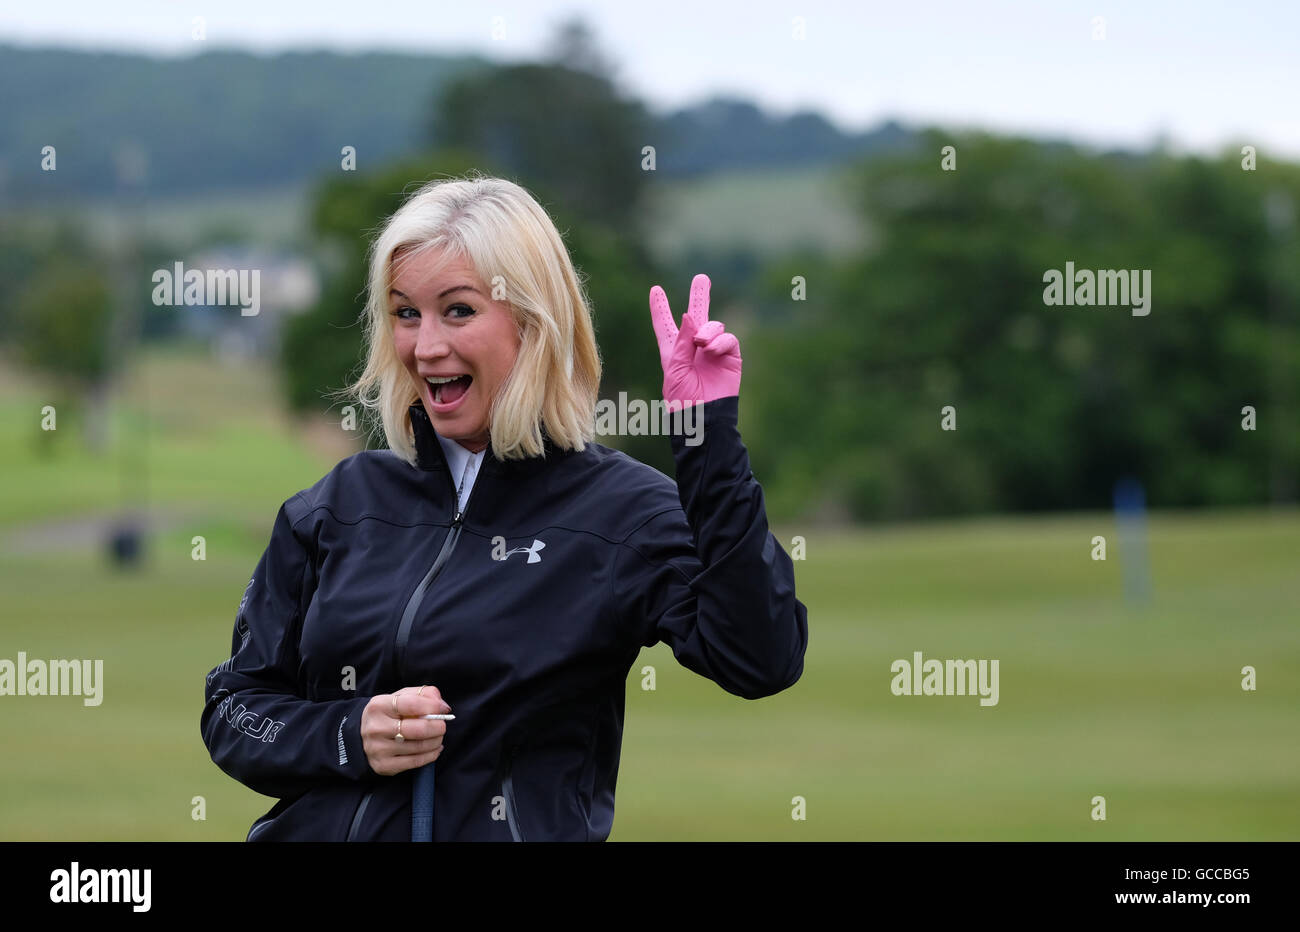 Celtic Manor, Newport, Pays de Galles - Samedi 9 juillet 2016 - La compétition de golf de la coupe des célébrités Denise Van Outen avec une jolie rose glove sur le vert de pratique. Banque D'Images